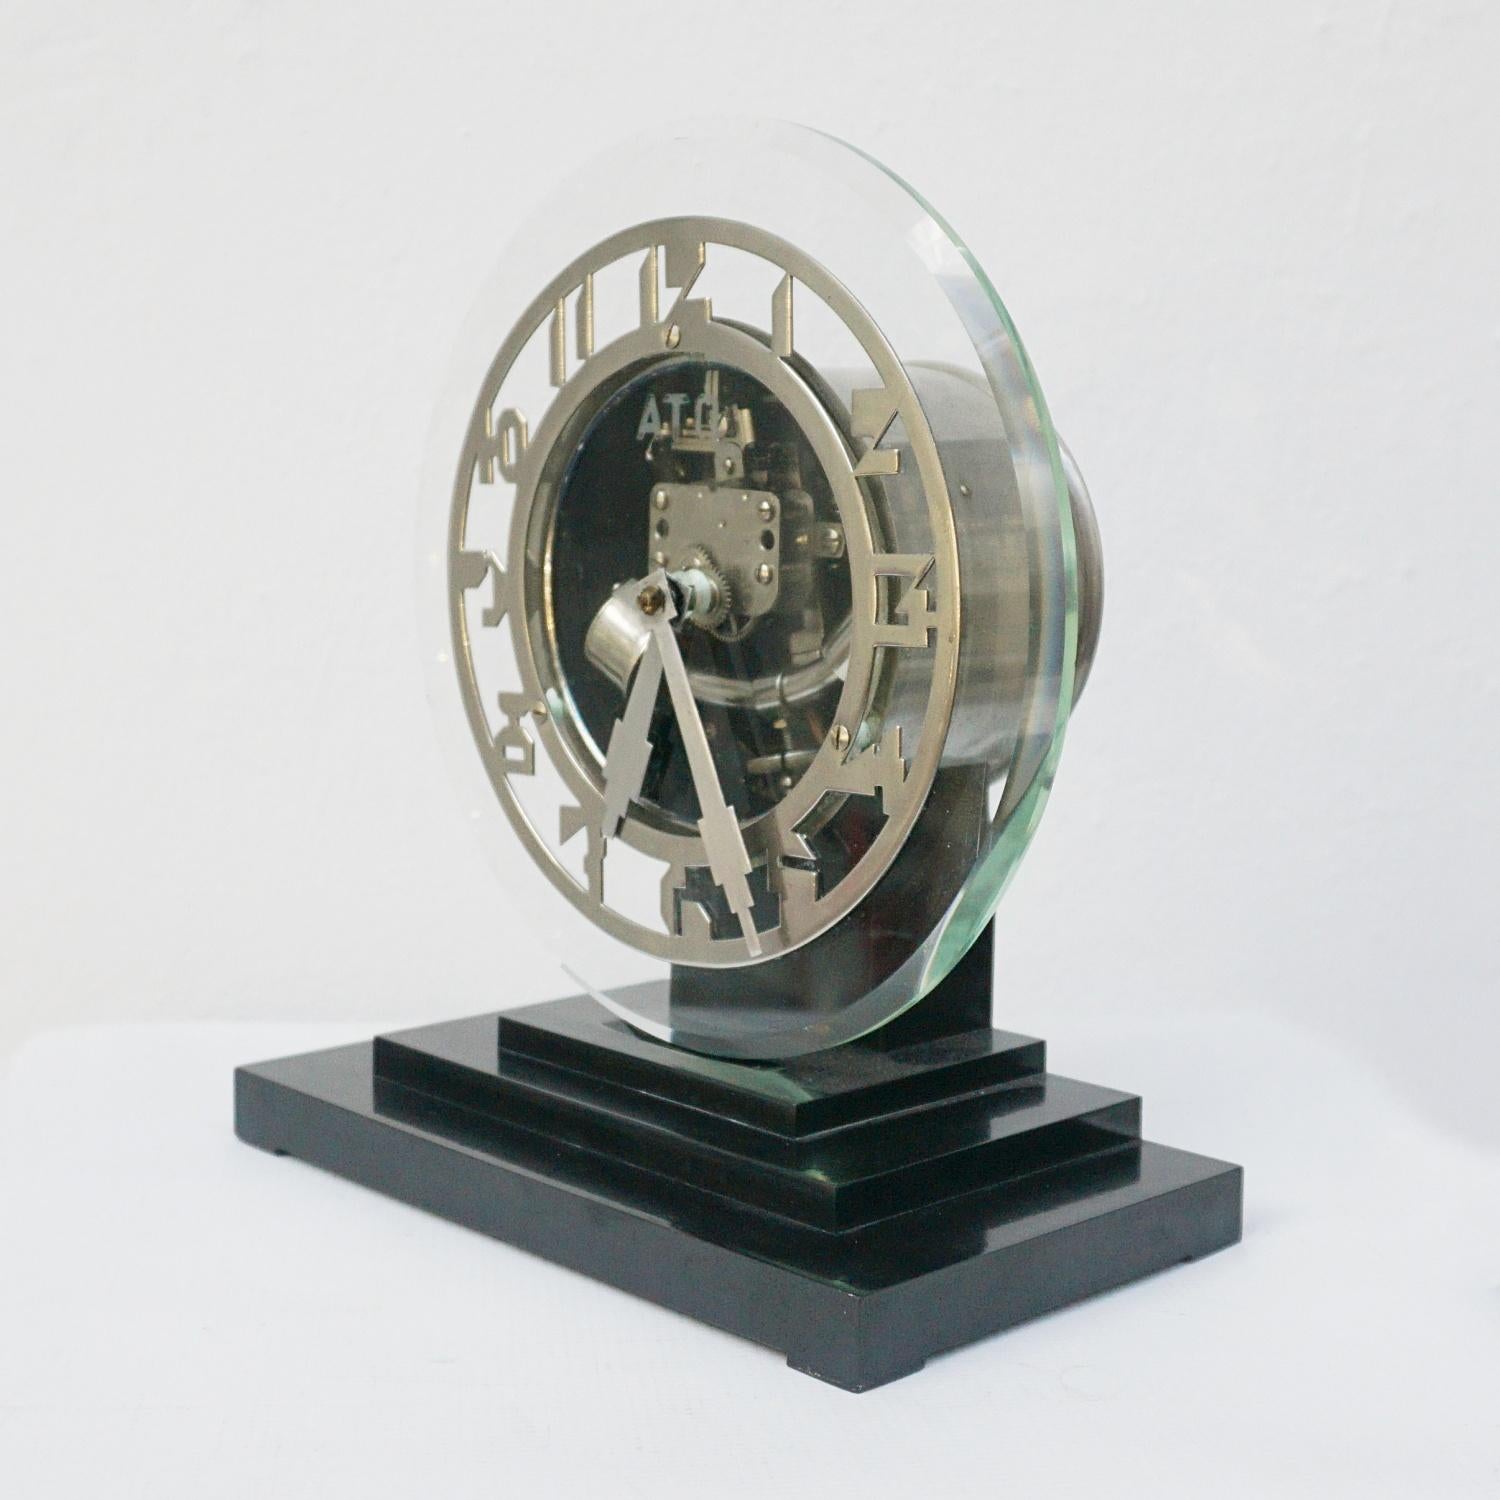 Vintage 1930's Ato Art Deco Mantel Clock Designed by Léon Hatot Circa 1930 Paris 4